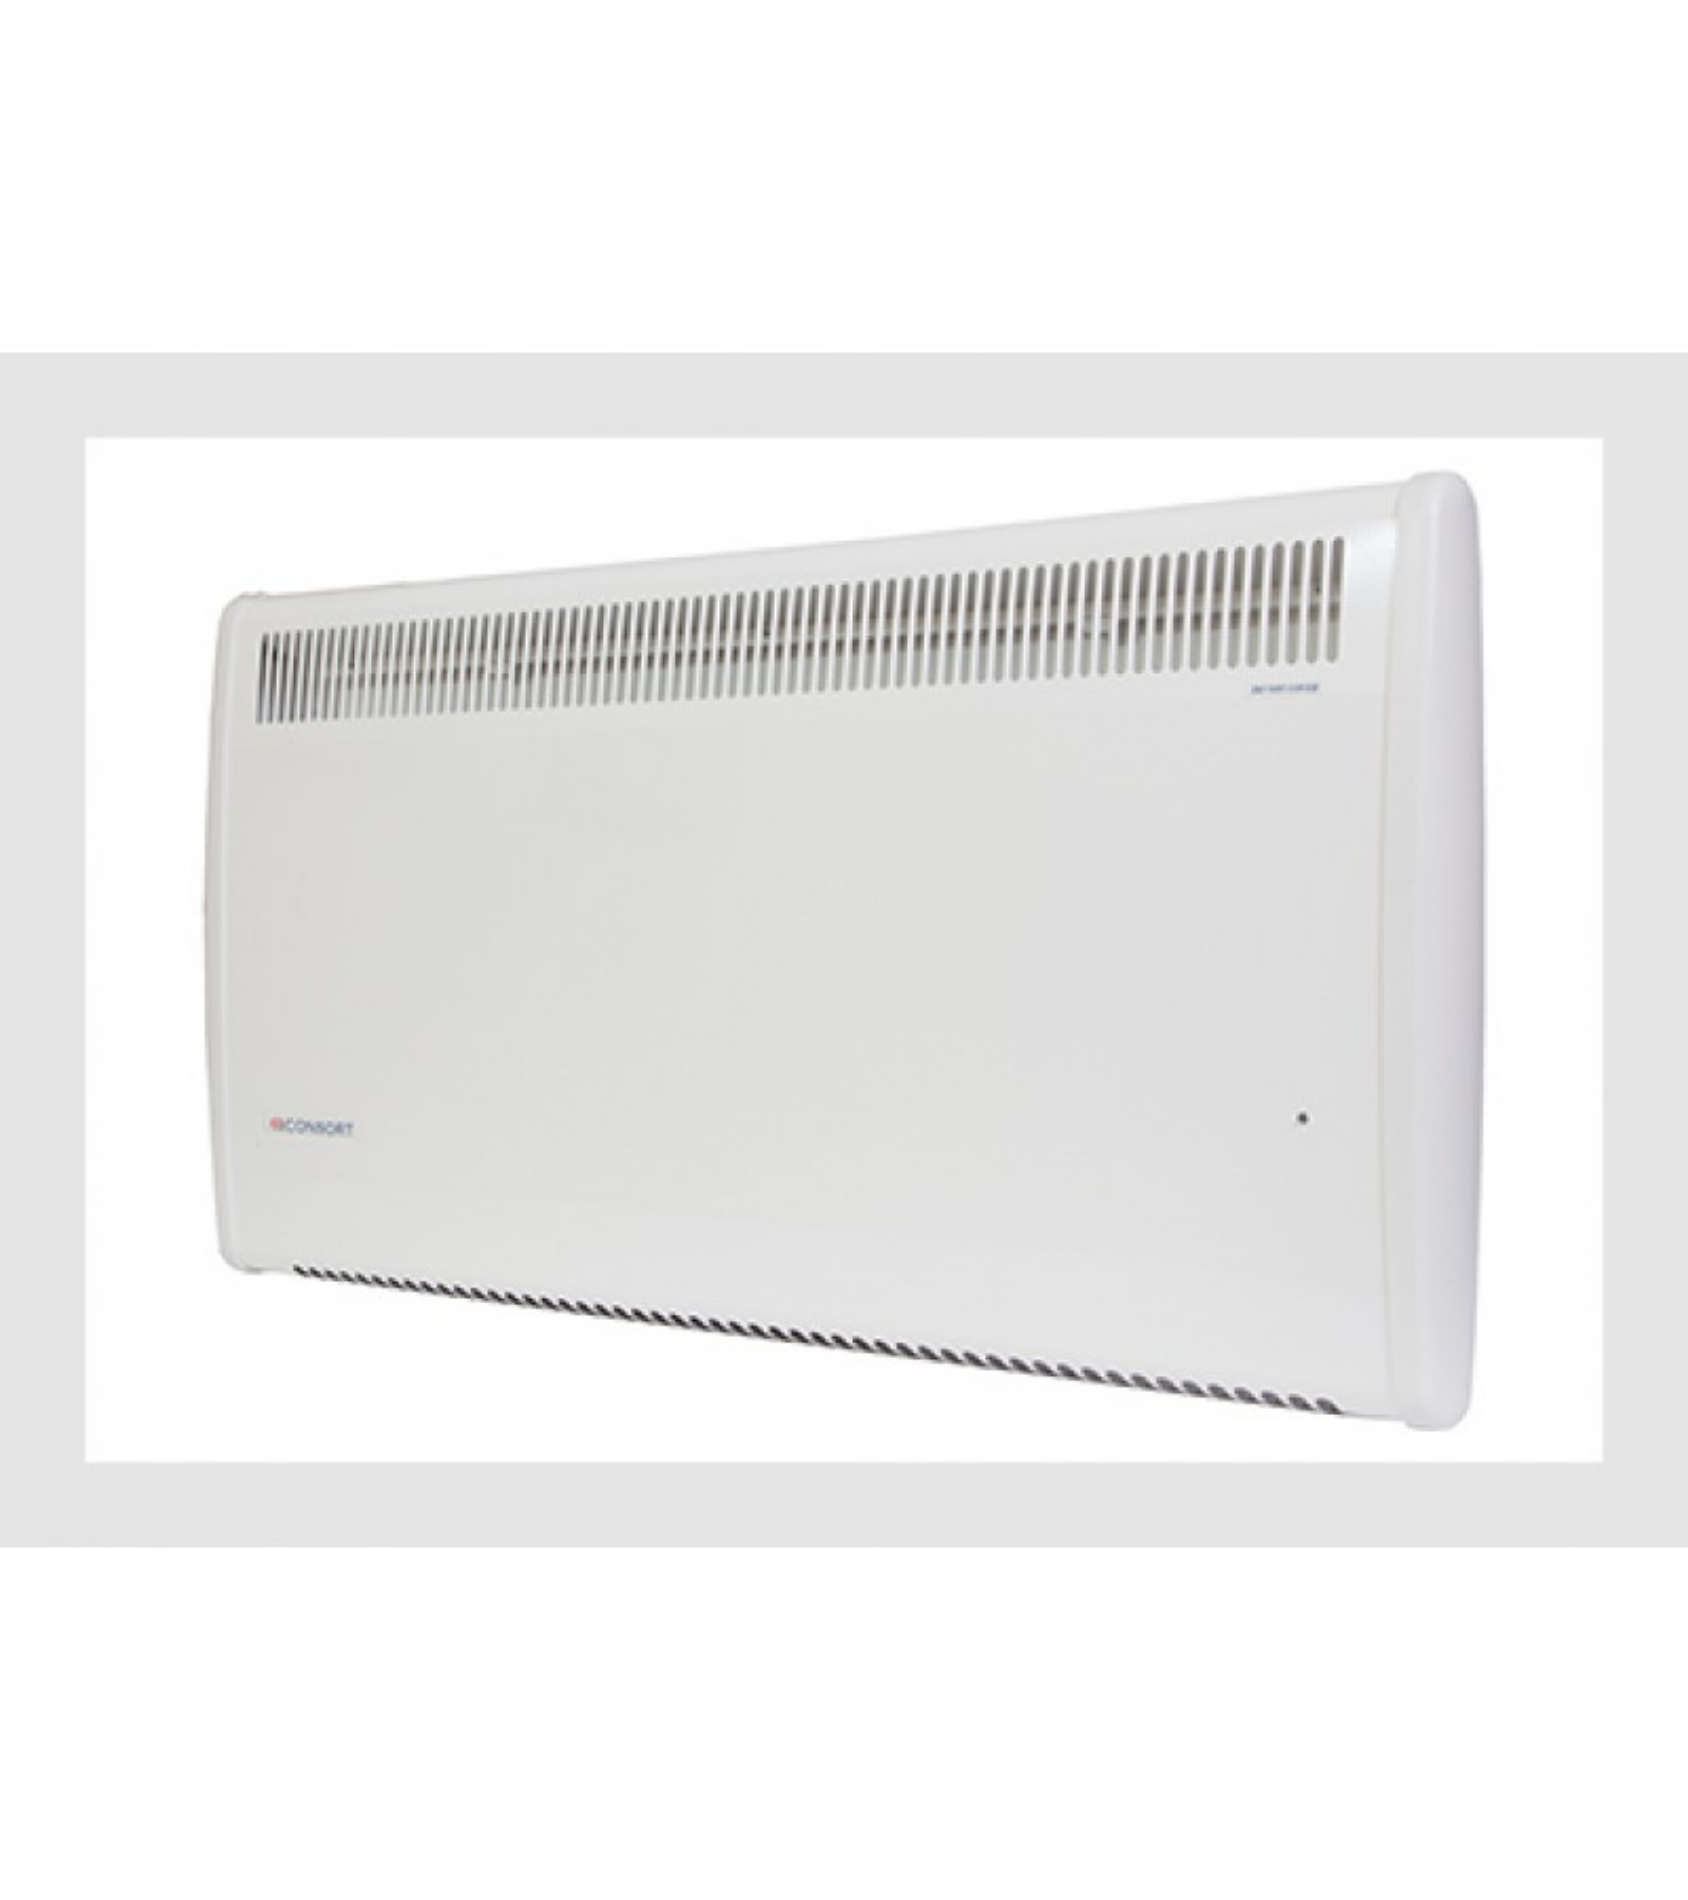 Picture of Consort Claudgen PSL075 750W Splashproof Panel Heater